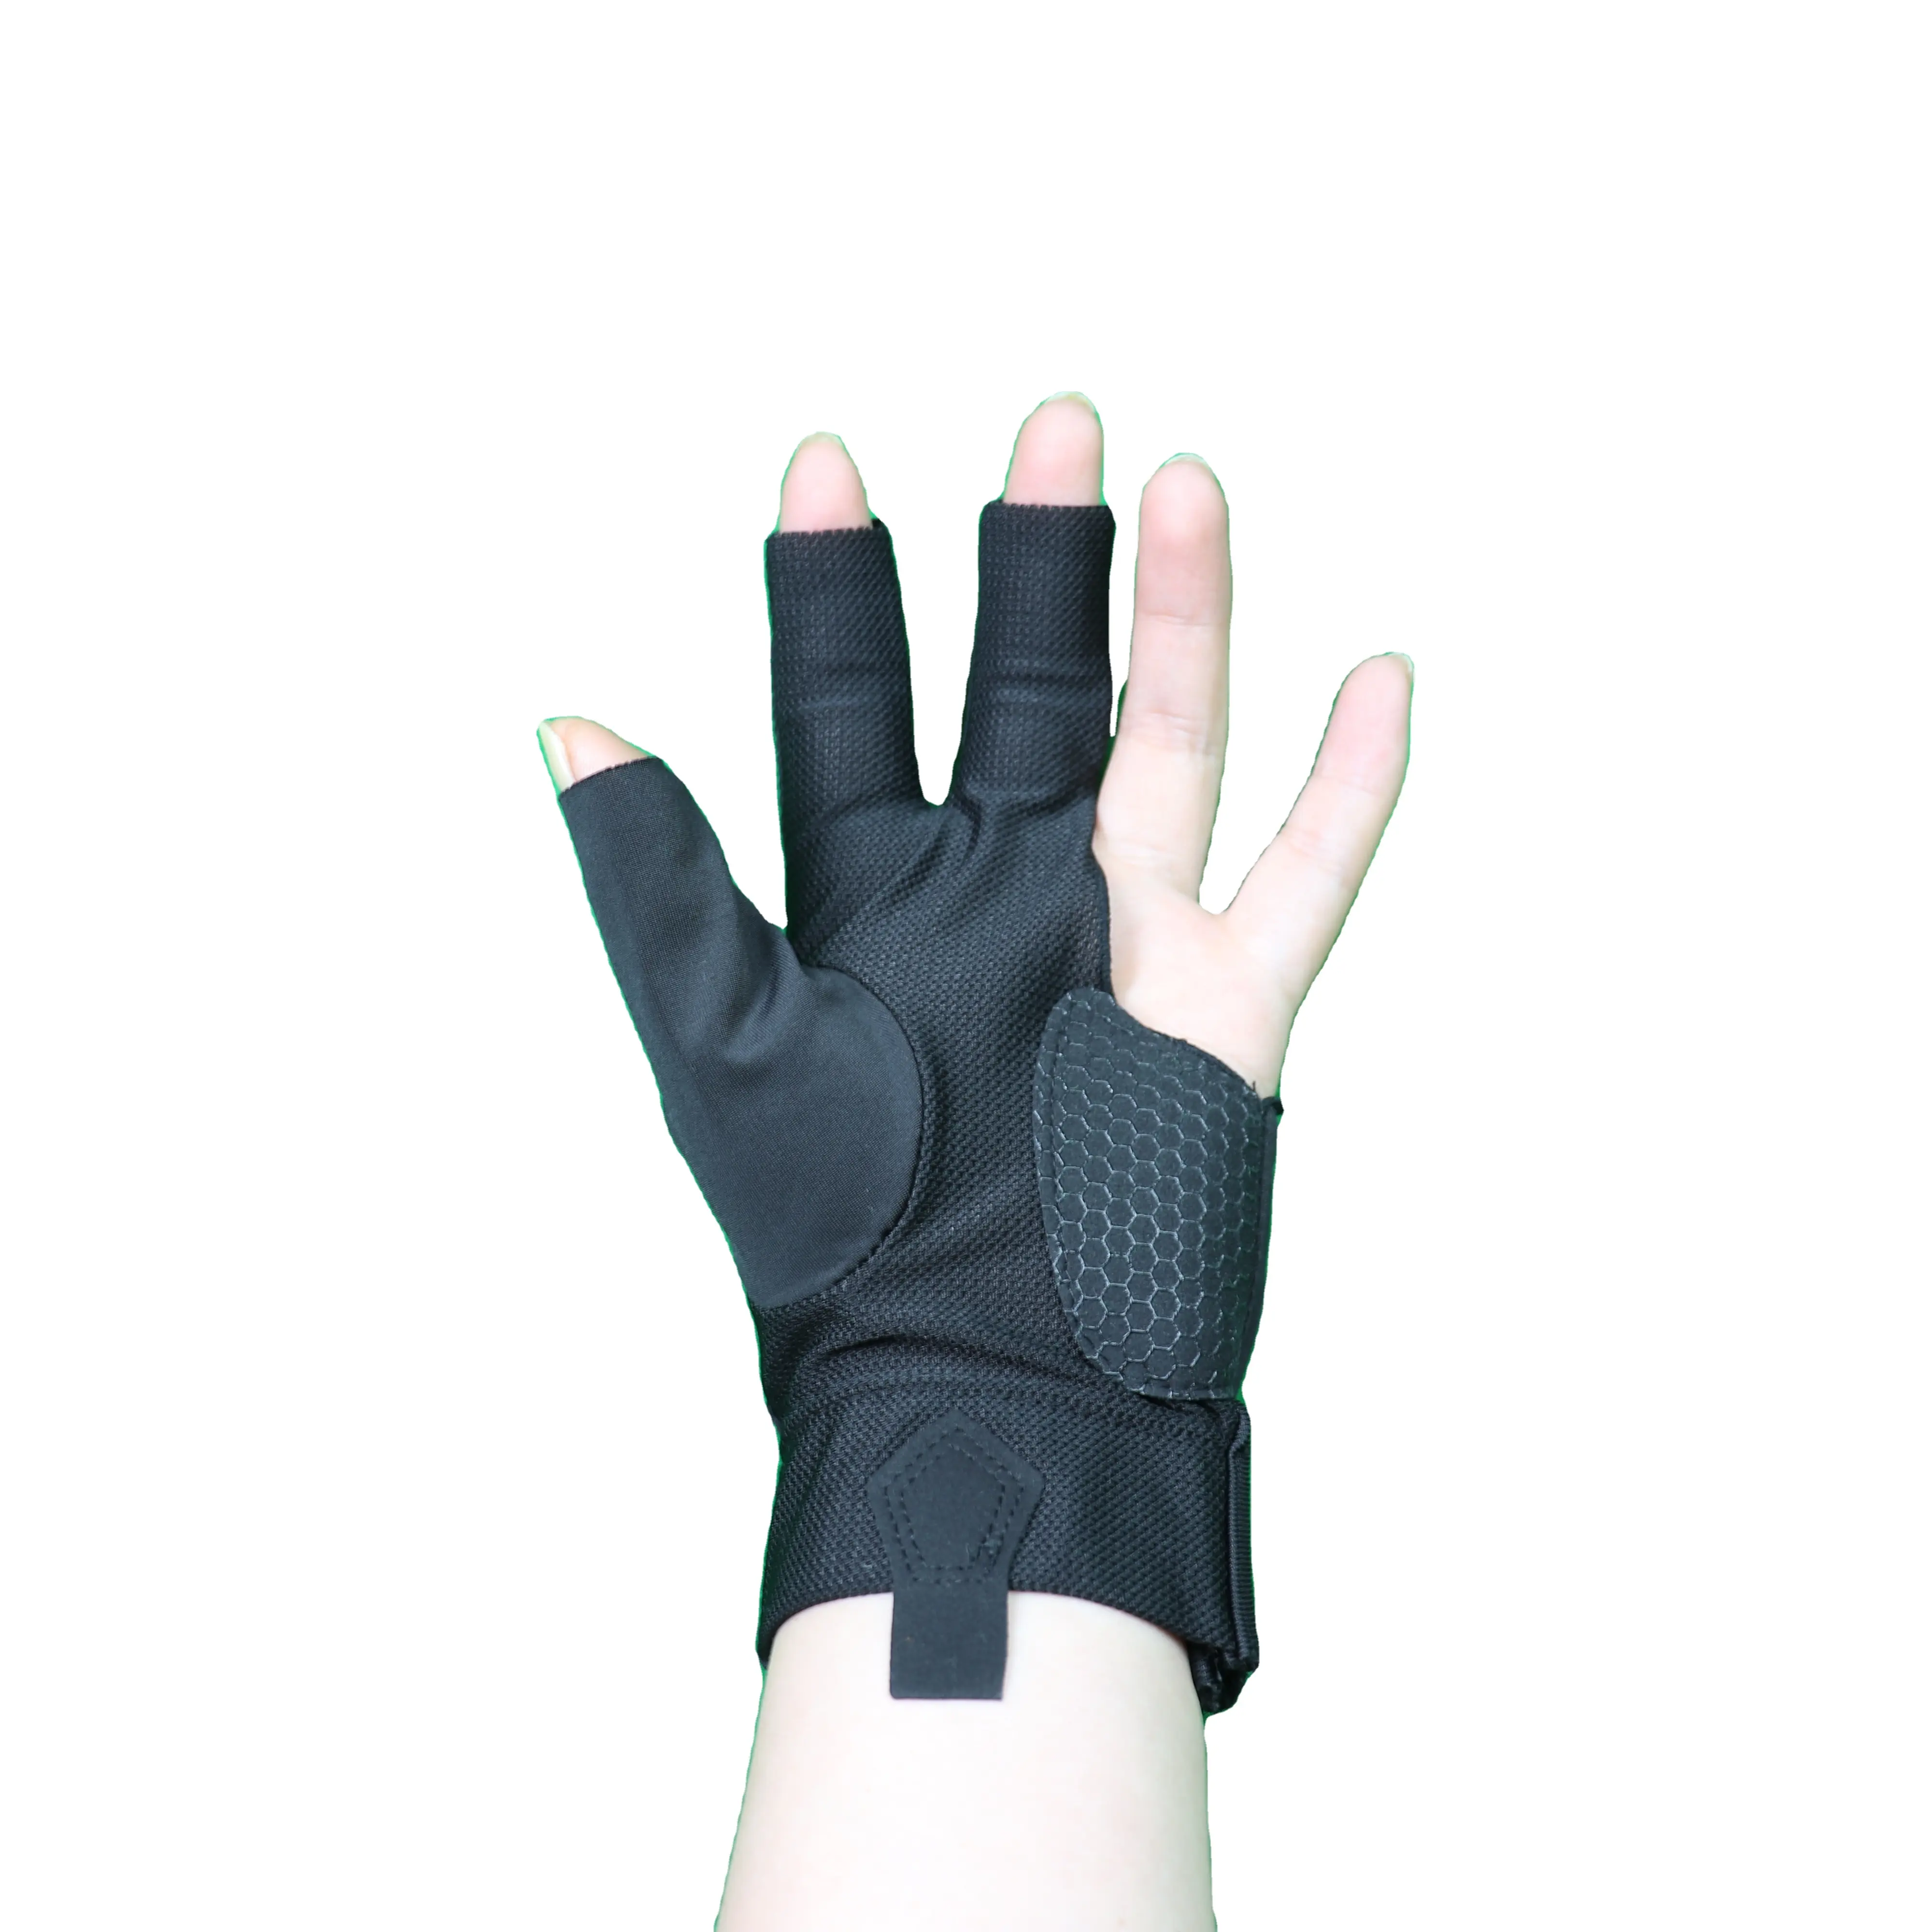 Ventas al por mayor 1 pieza antideslizante transpirable silicona 3 dedos Snooker Cue guante deportivo guantes de billar para mujeres y hombres